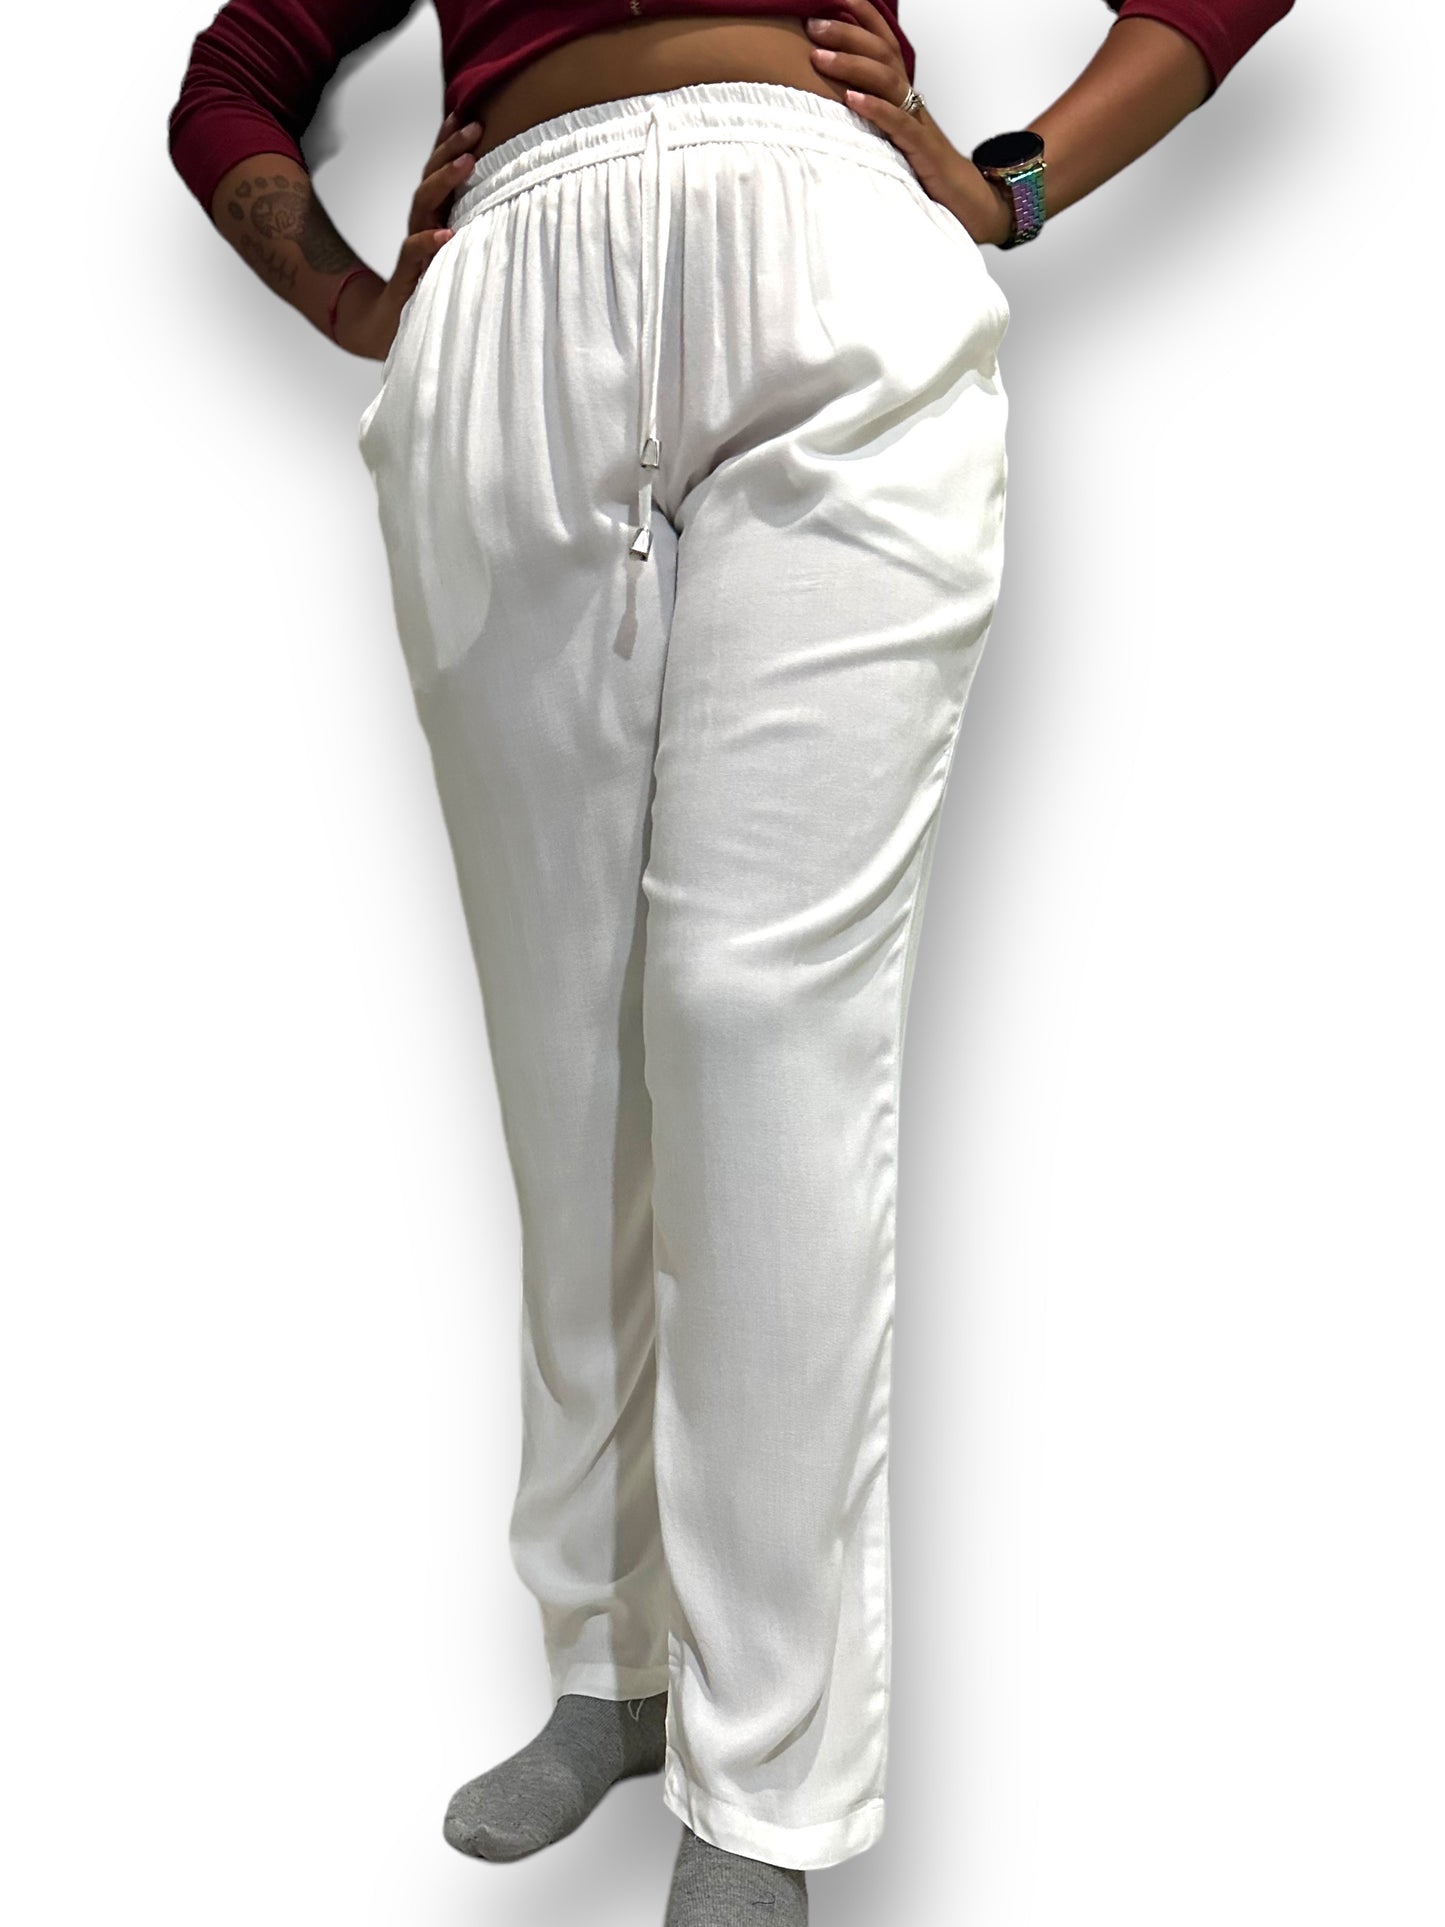 Pantalón de Dama Blanco